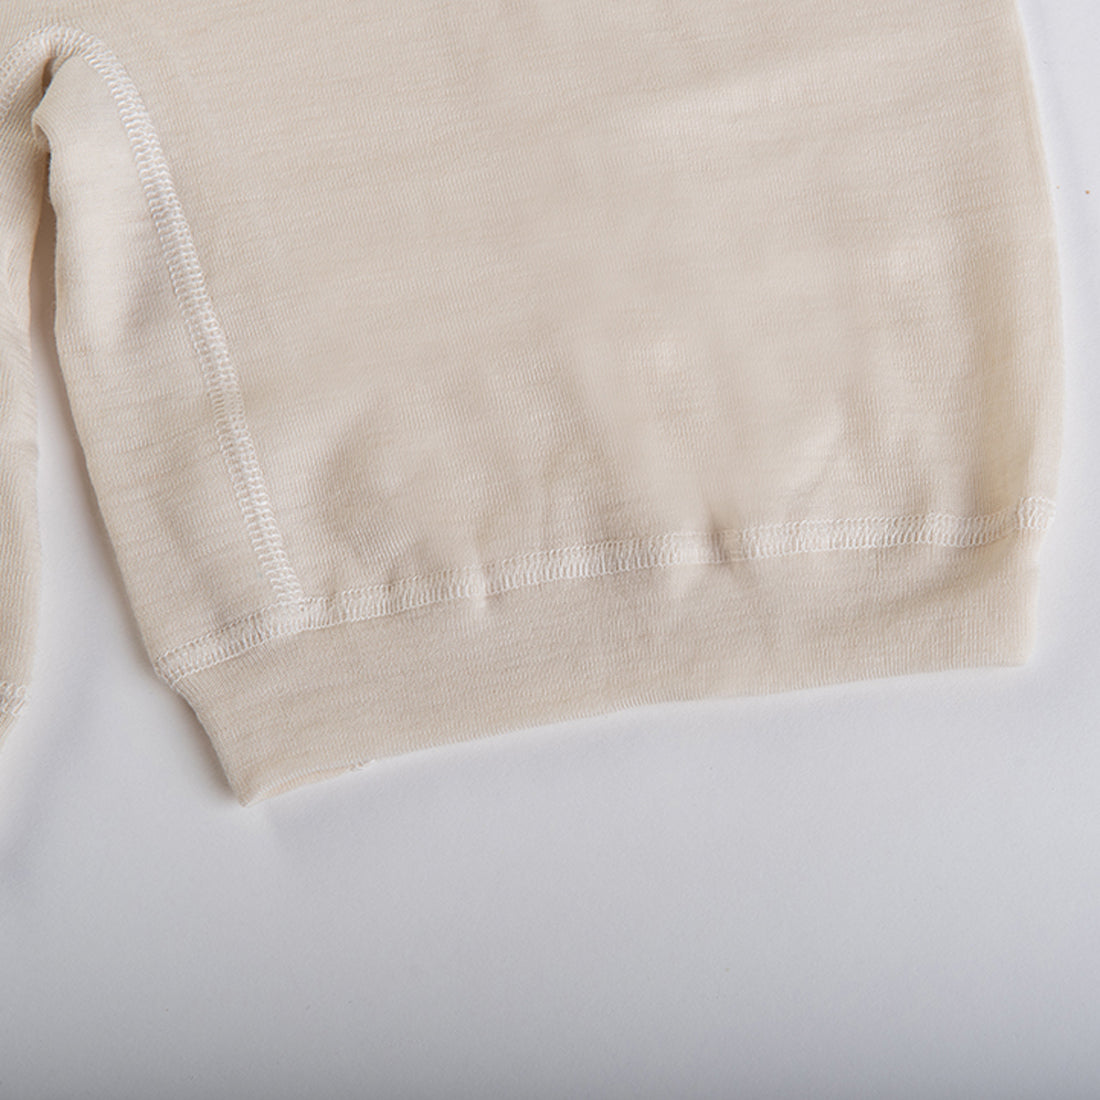 Hocosa Women's Long Underwear Pants in Organic Wool – Danish Woolen Delight